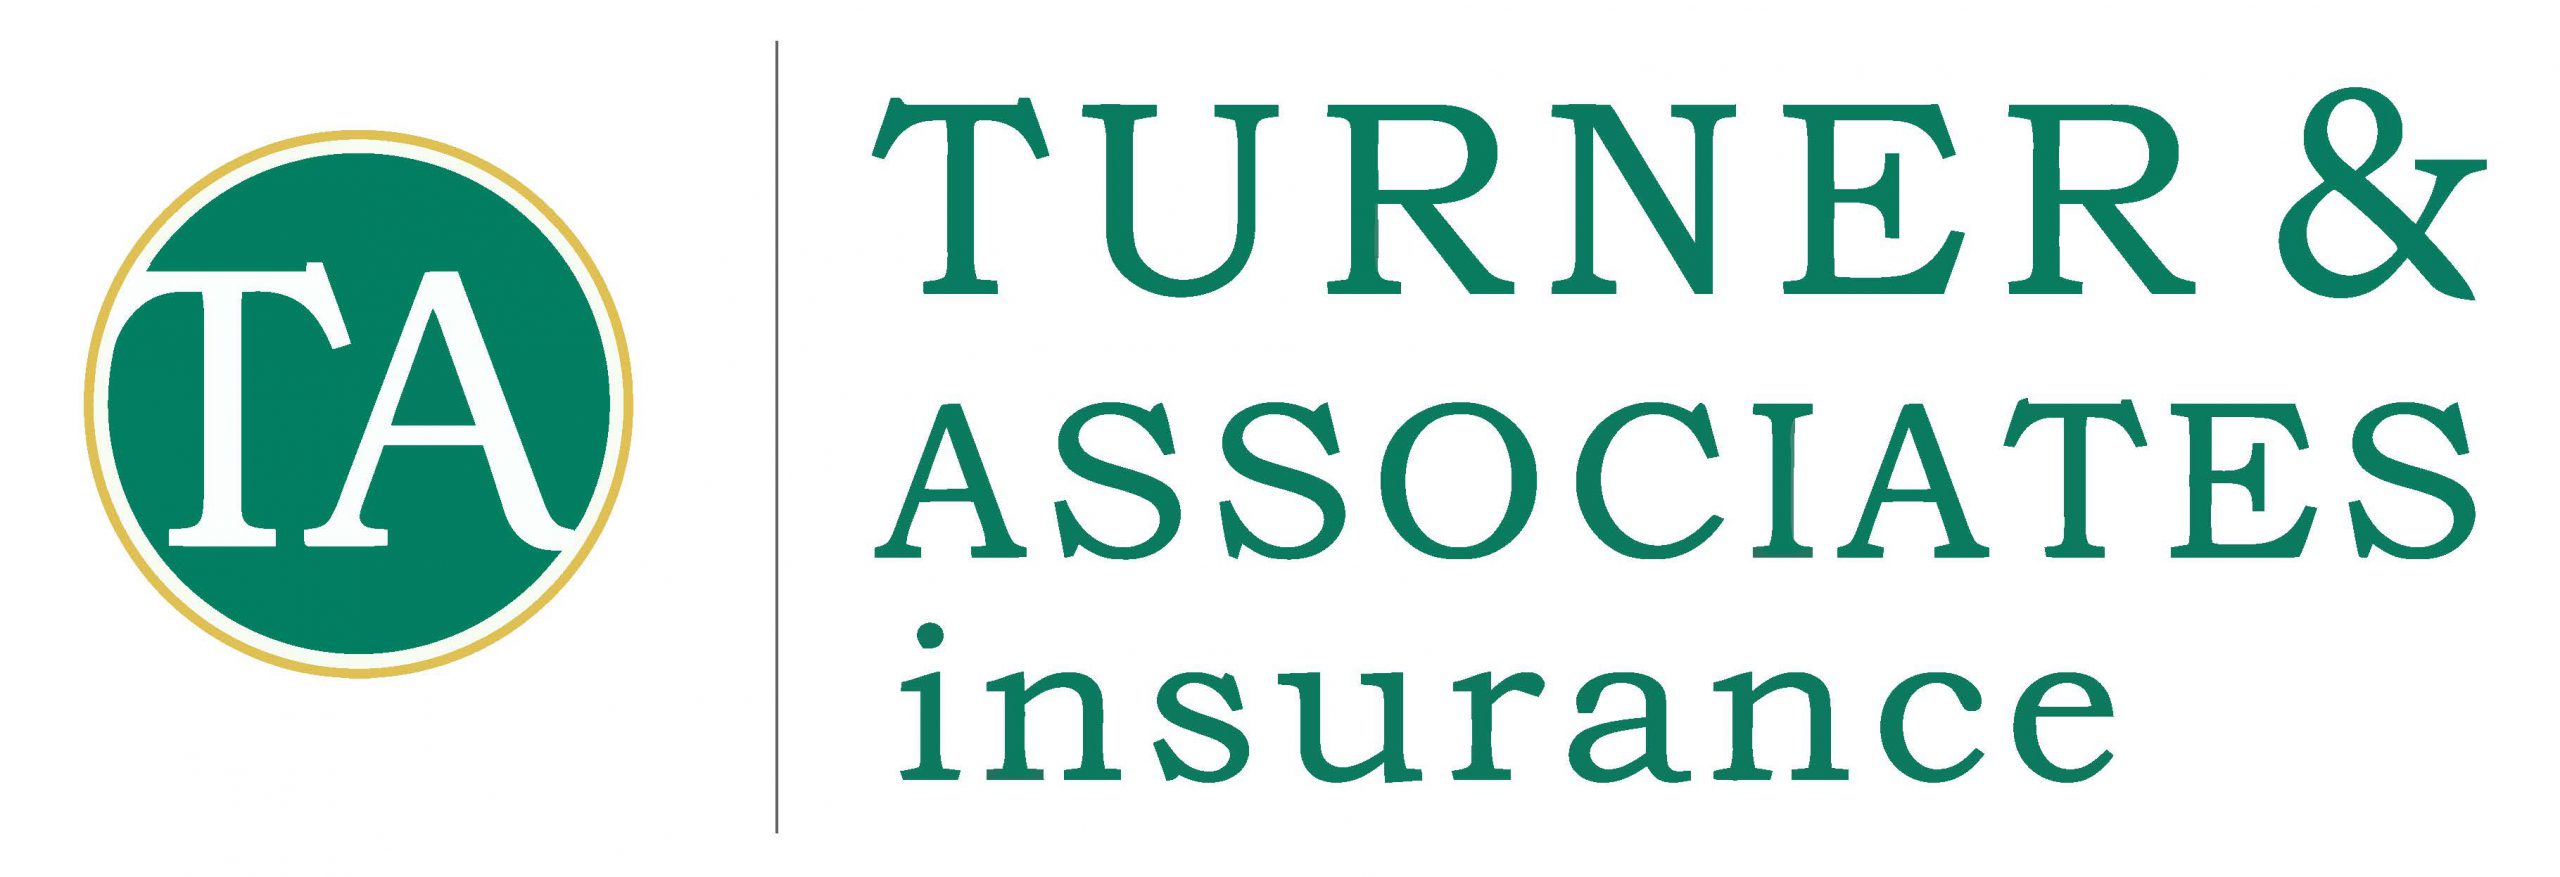 Turner & Associates